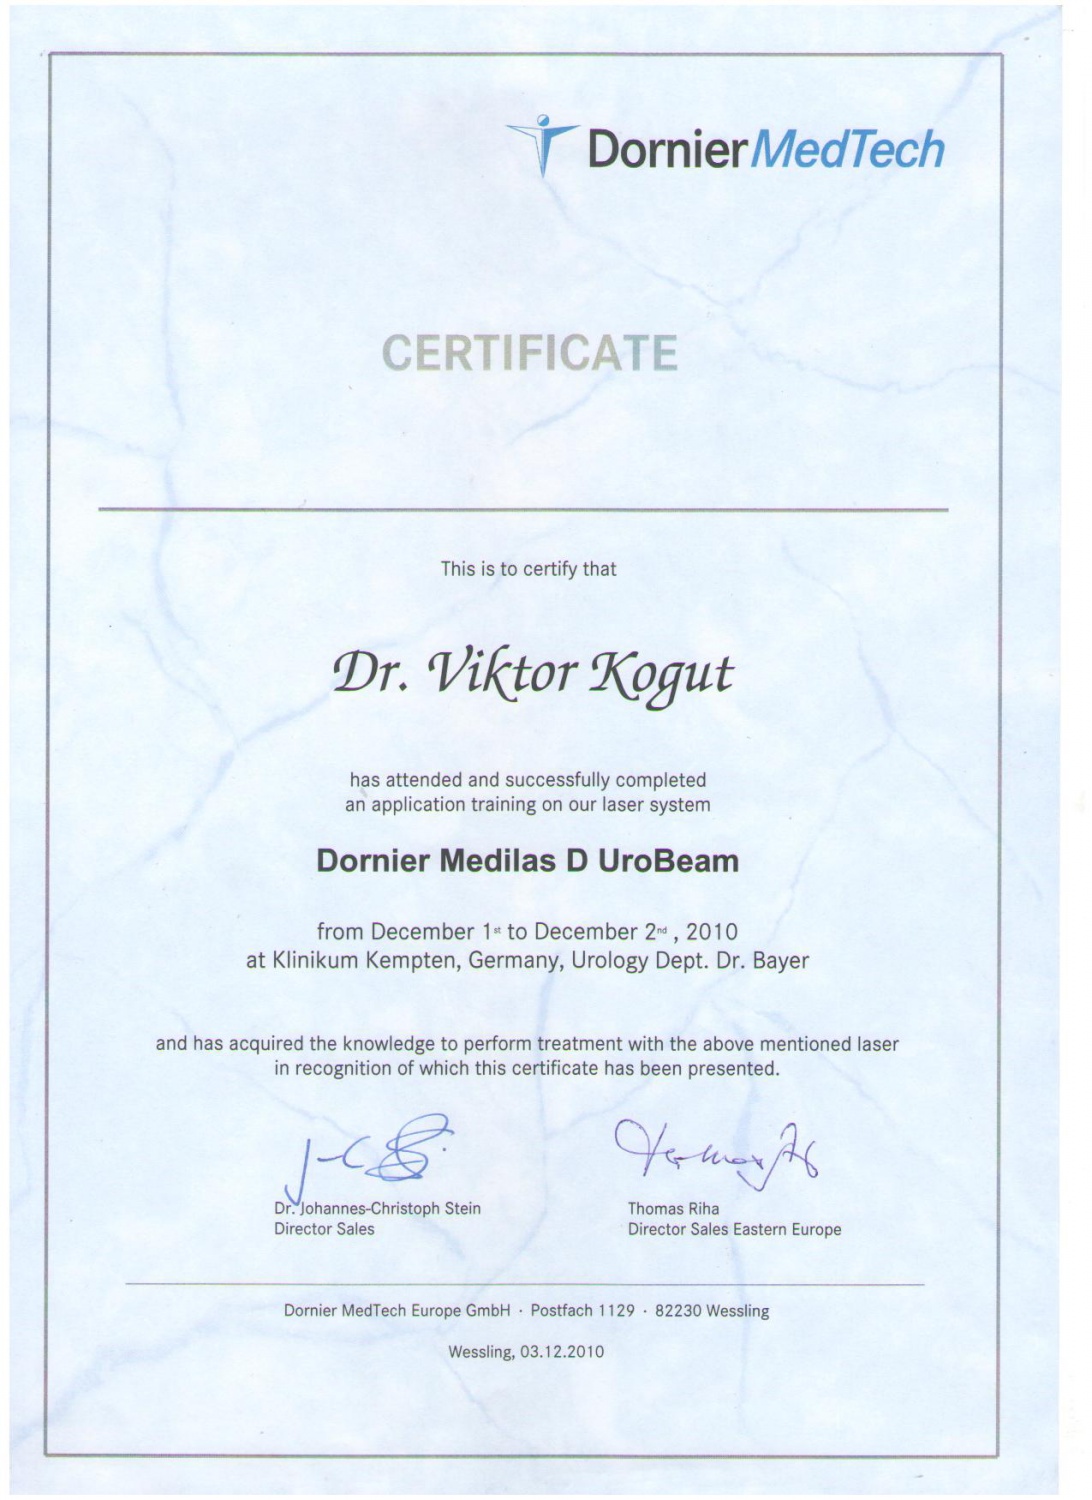 Когут В.В. - Сертификат об участии и успешном прохождении тренинга с использованием диодного лазера "Dornier Medilas D UroBeam" (2010 г.)